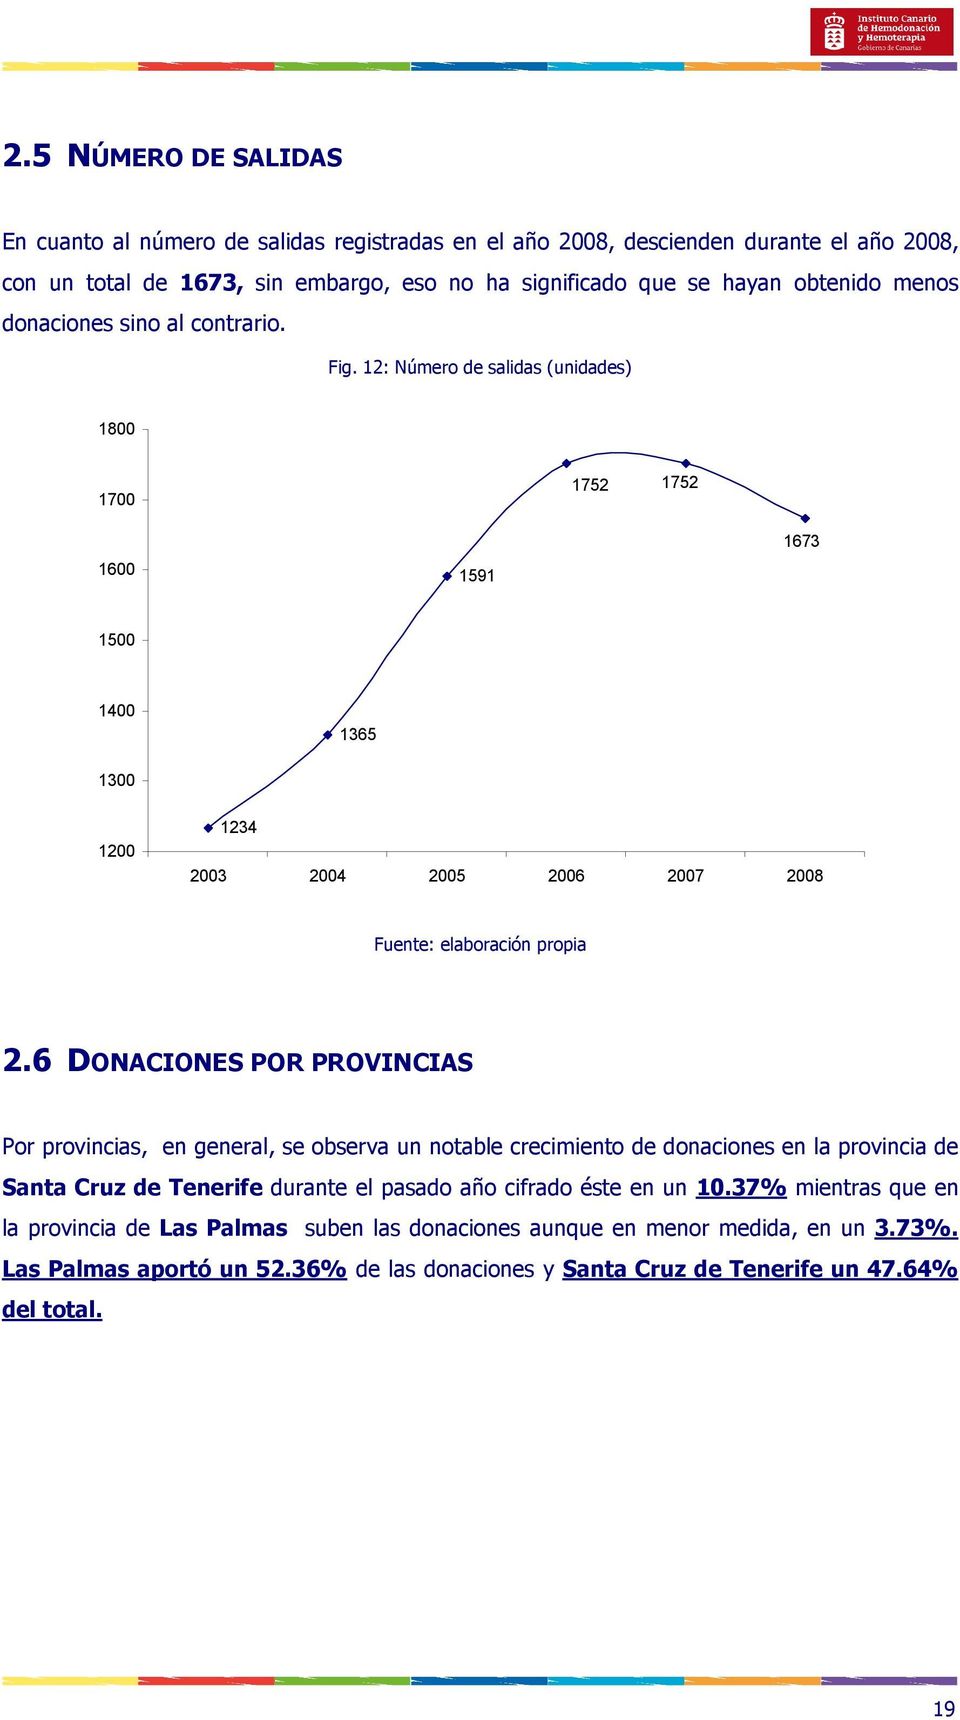 6 DONACIONES POR PROVINCIAS Por provincias, en general, se observa un notable crecimiento de donaciones en la provincia de Santa Cruz de Tenerife durante el pasado año cifrado éste en un